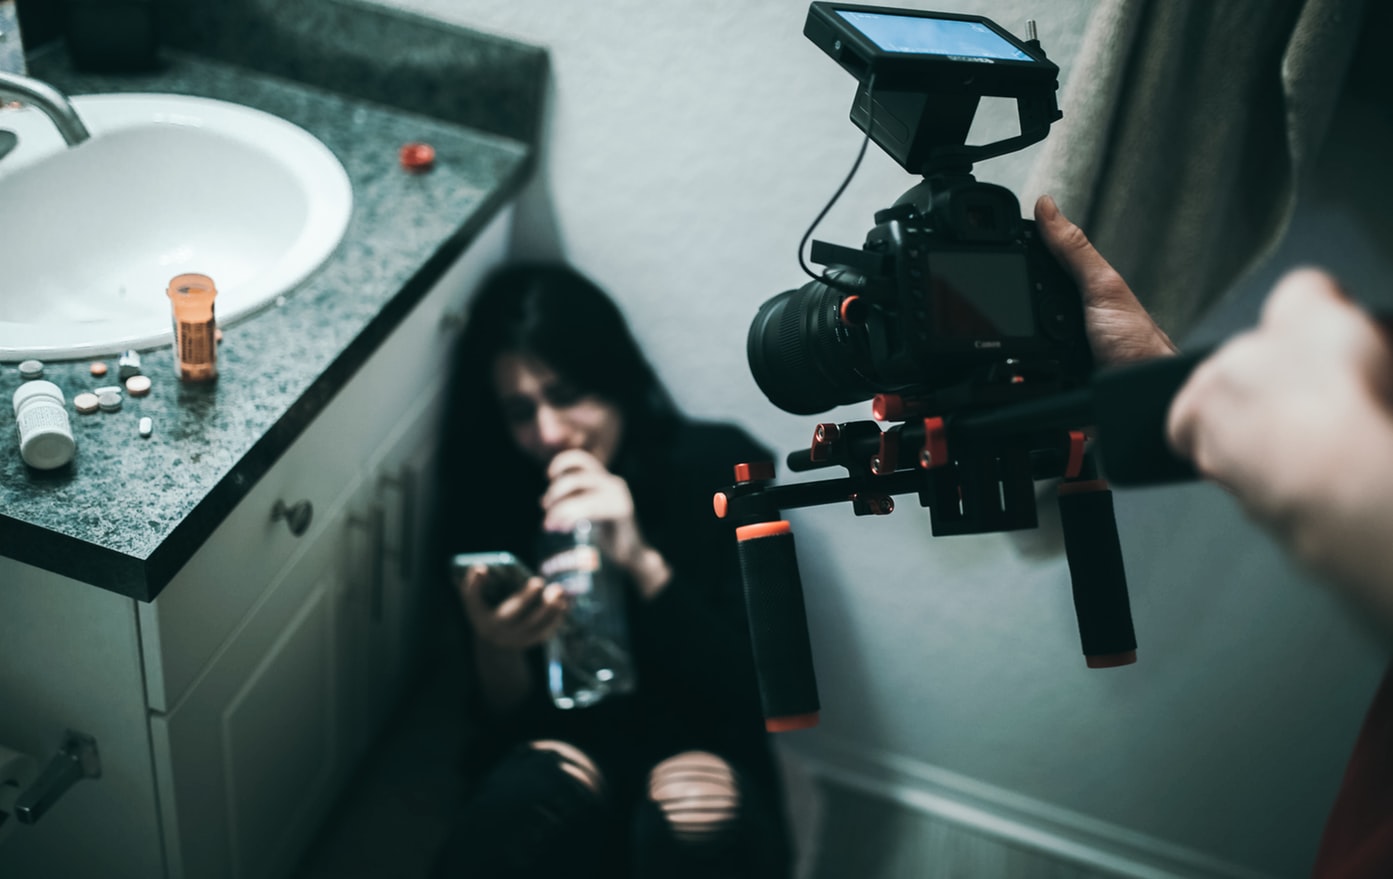 Mulher deitada em chão de banheiro, chorando, segurando uma garrafa de bebida alcóolica e digitando em seu celular. Em primeiro plano na imagem, alguém com uma câmera profissional filma a mulher.